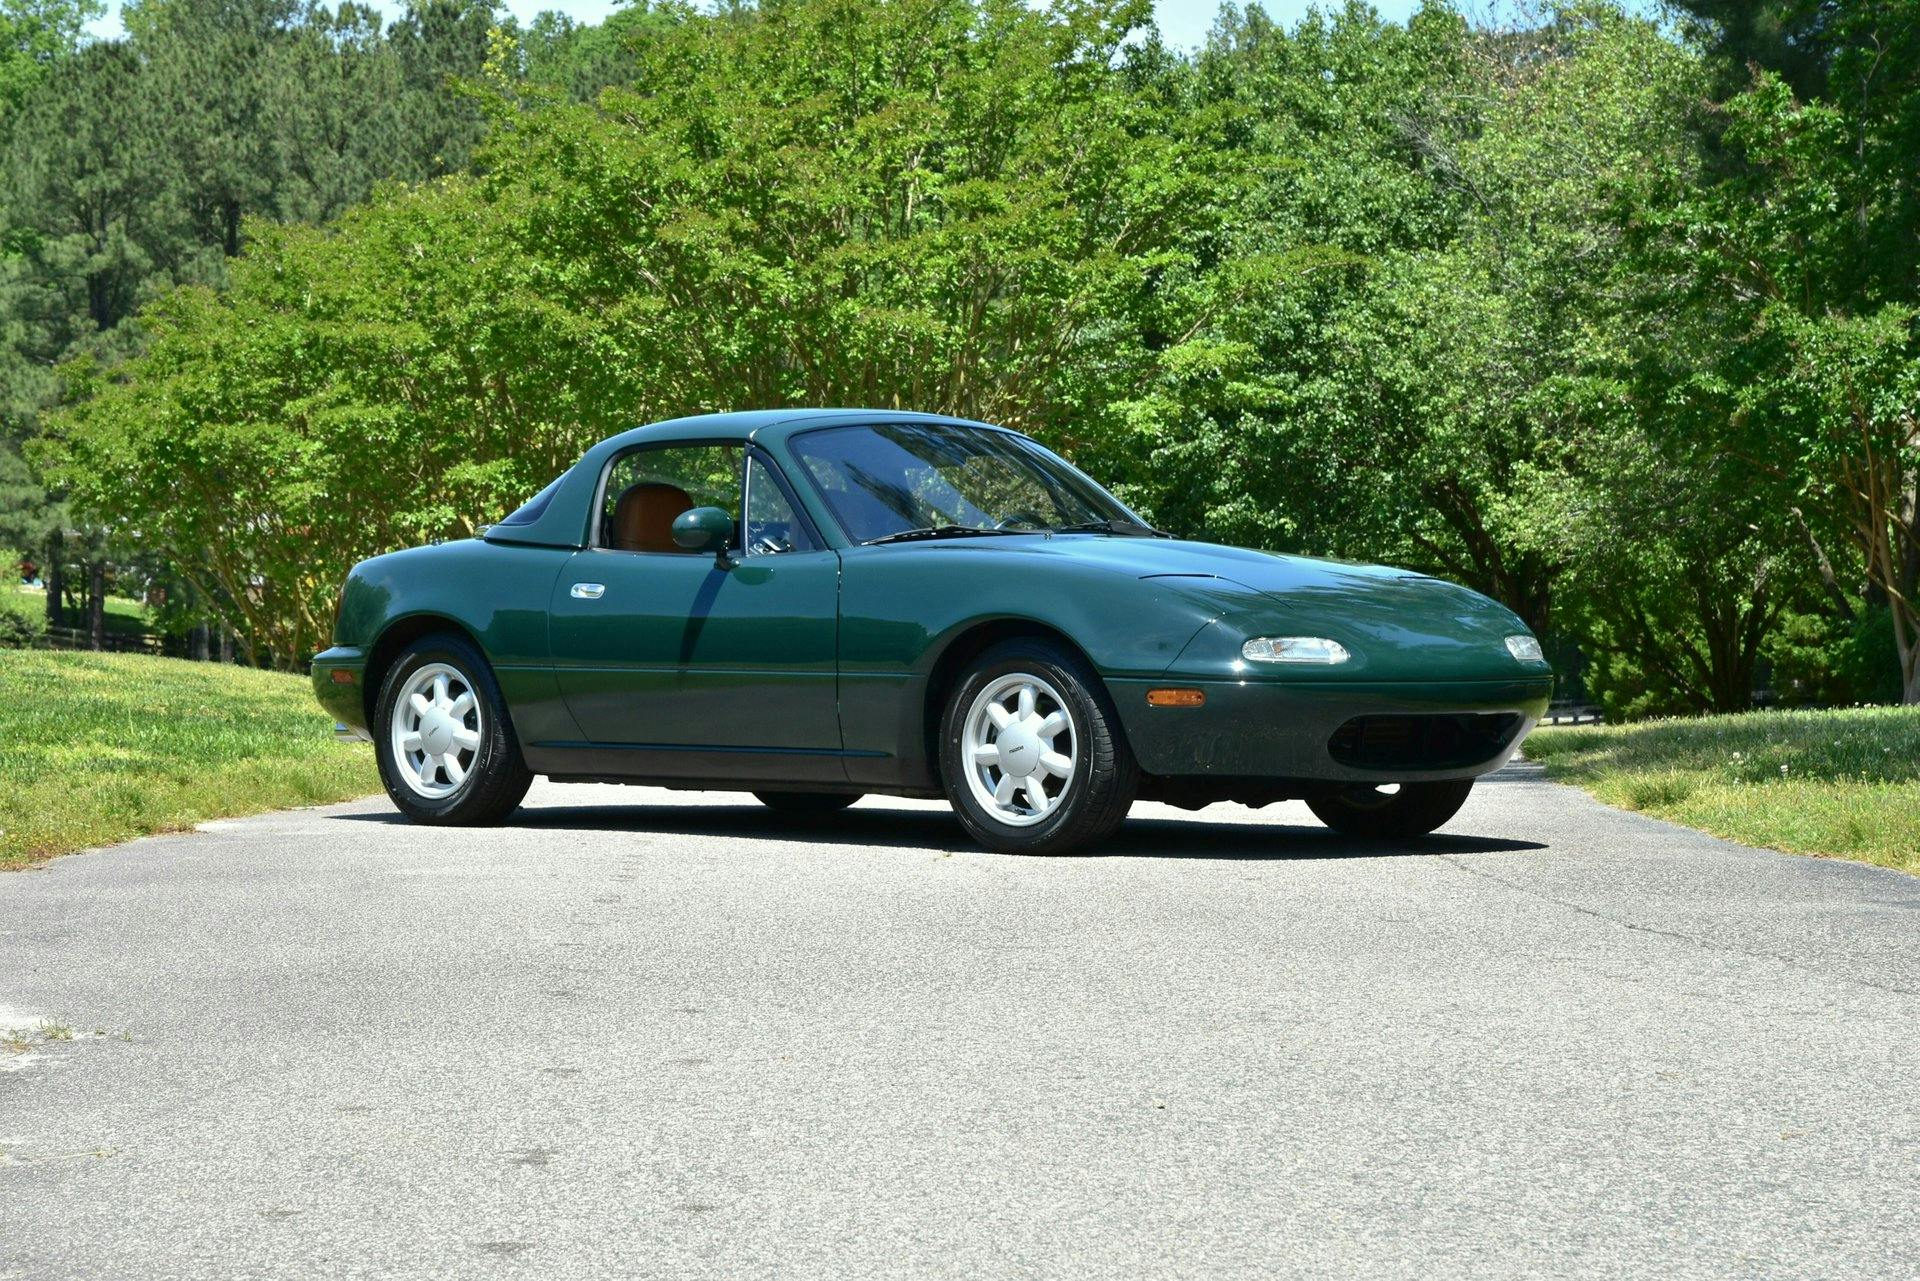 1991 Mazda Miata Special Edition front three-quarter